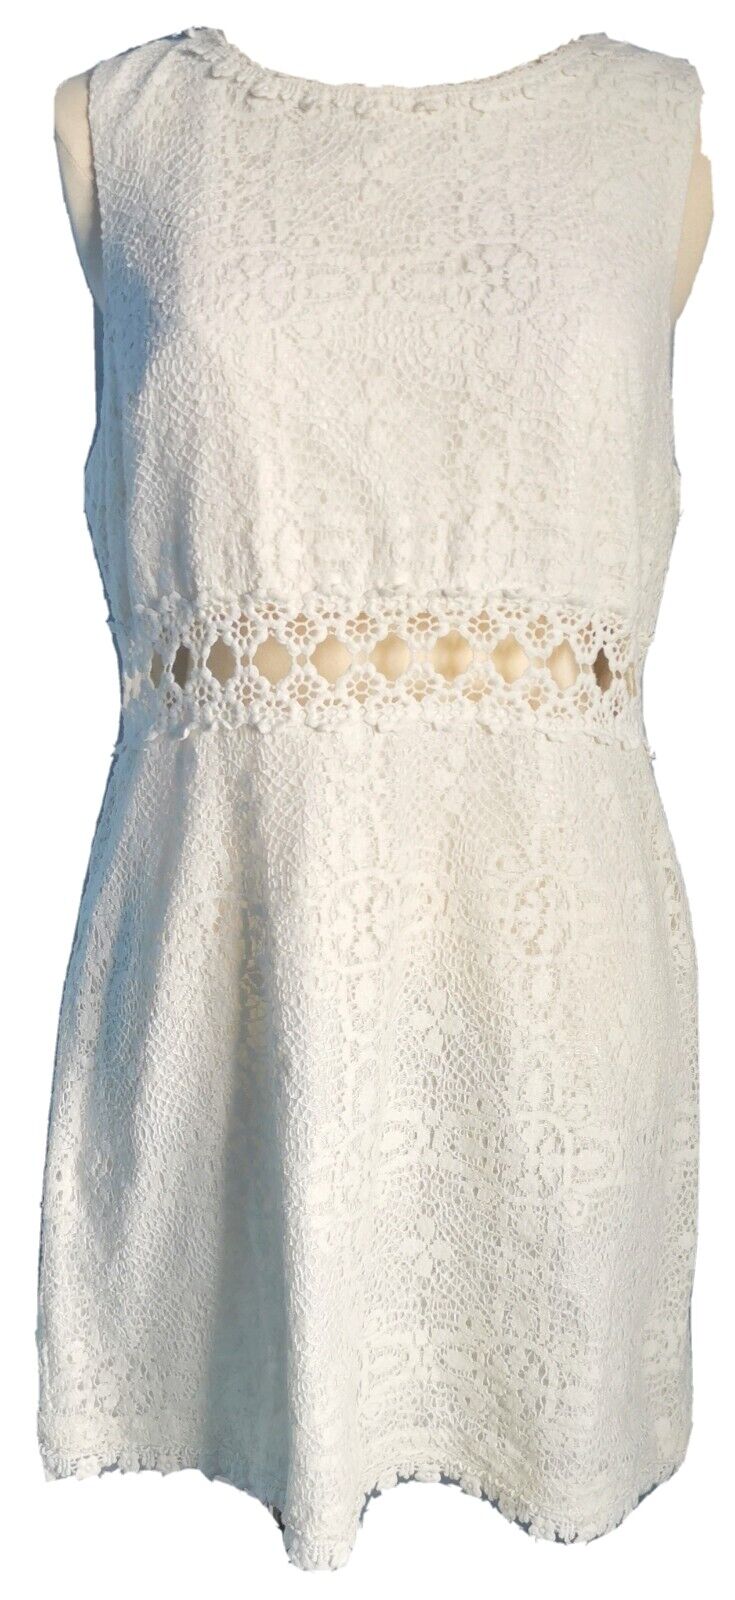 Topshop Women\'s Dress White Size 16 Cotton Mix Lace Crochet Lined Cut Out VGC